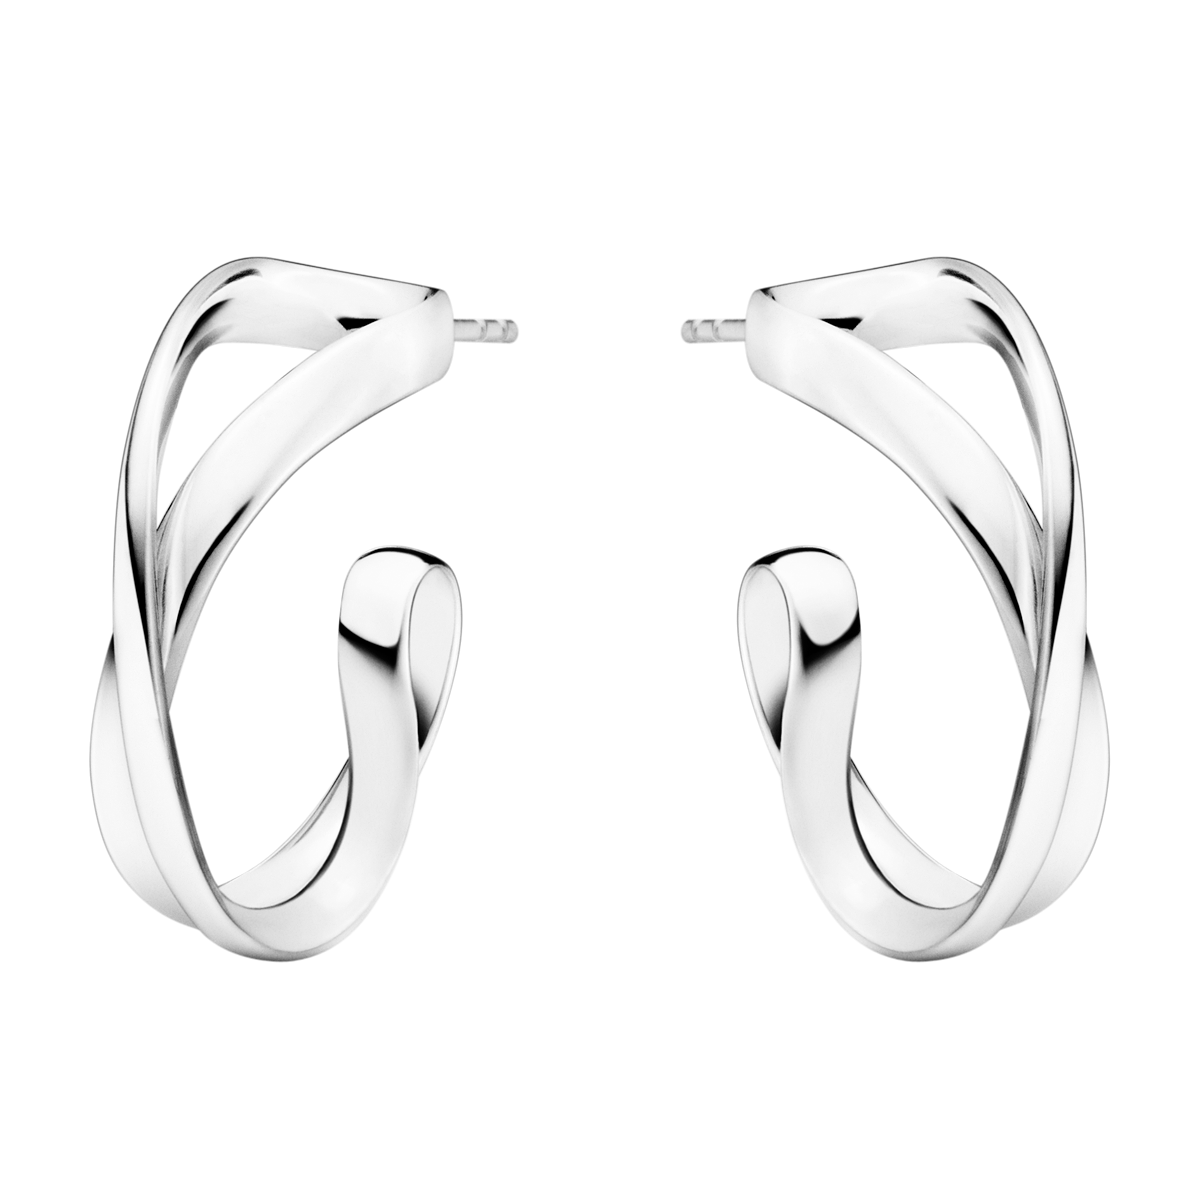 Infinity øreringe små - sølv fra Georg Jensen